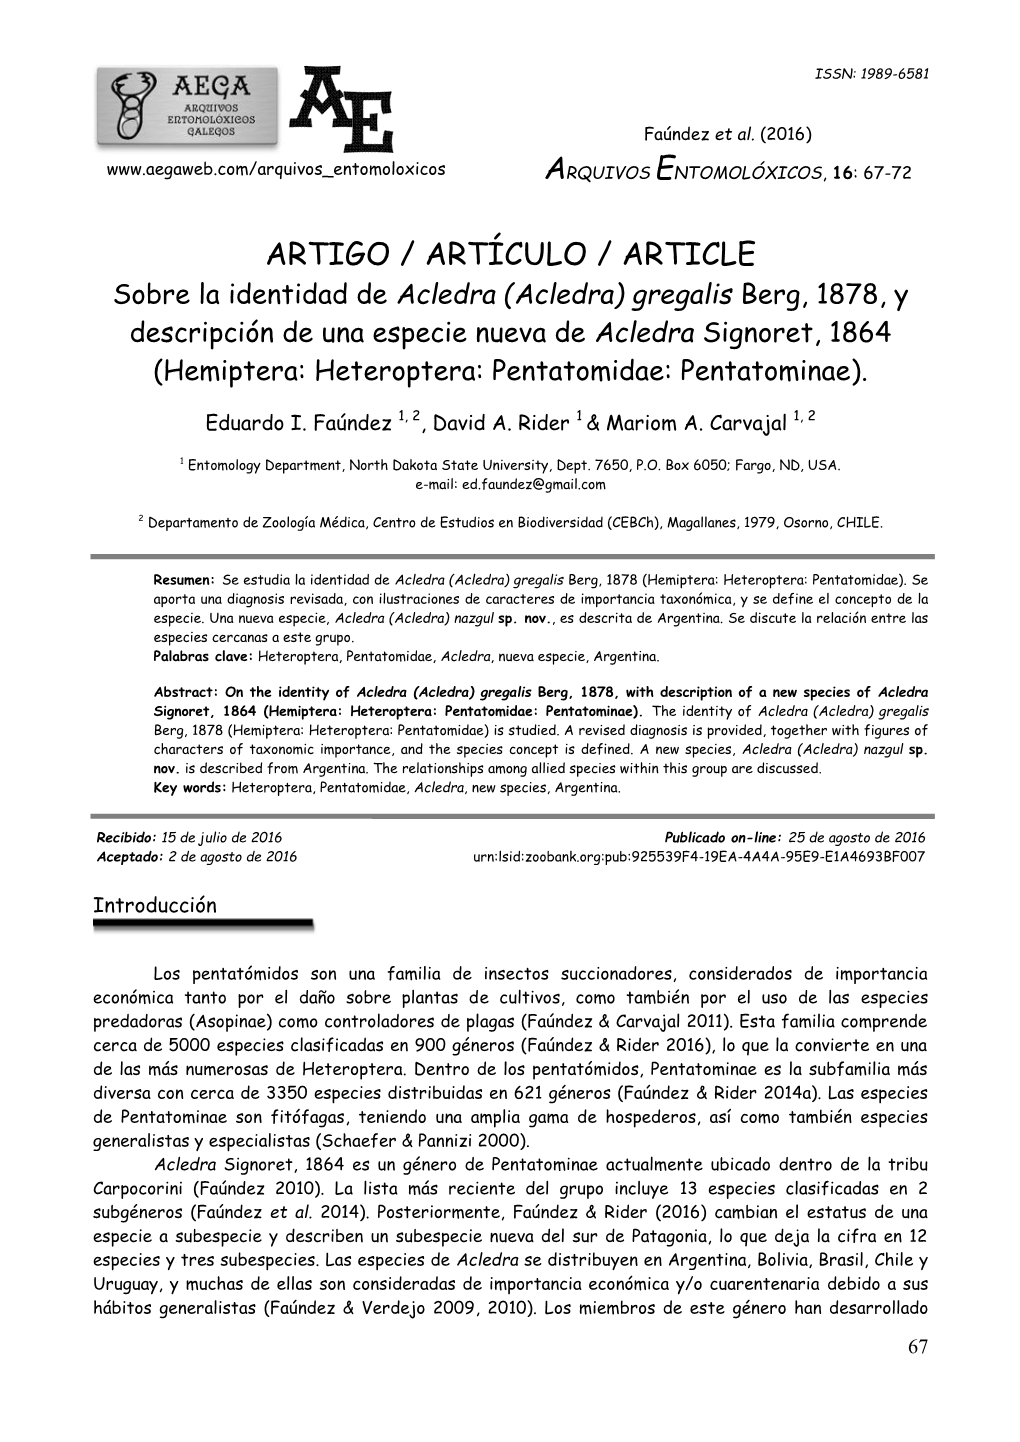 ARTIGO / ARTÍCULO / ARTICLE Sobre La Identidad De Acledra (Acledra) Gregalis Berg, 1878, Y Descripción De Una Especie Nueva De Acledra Signoret, 1864